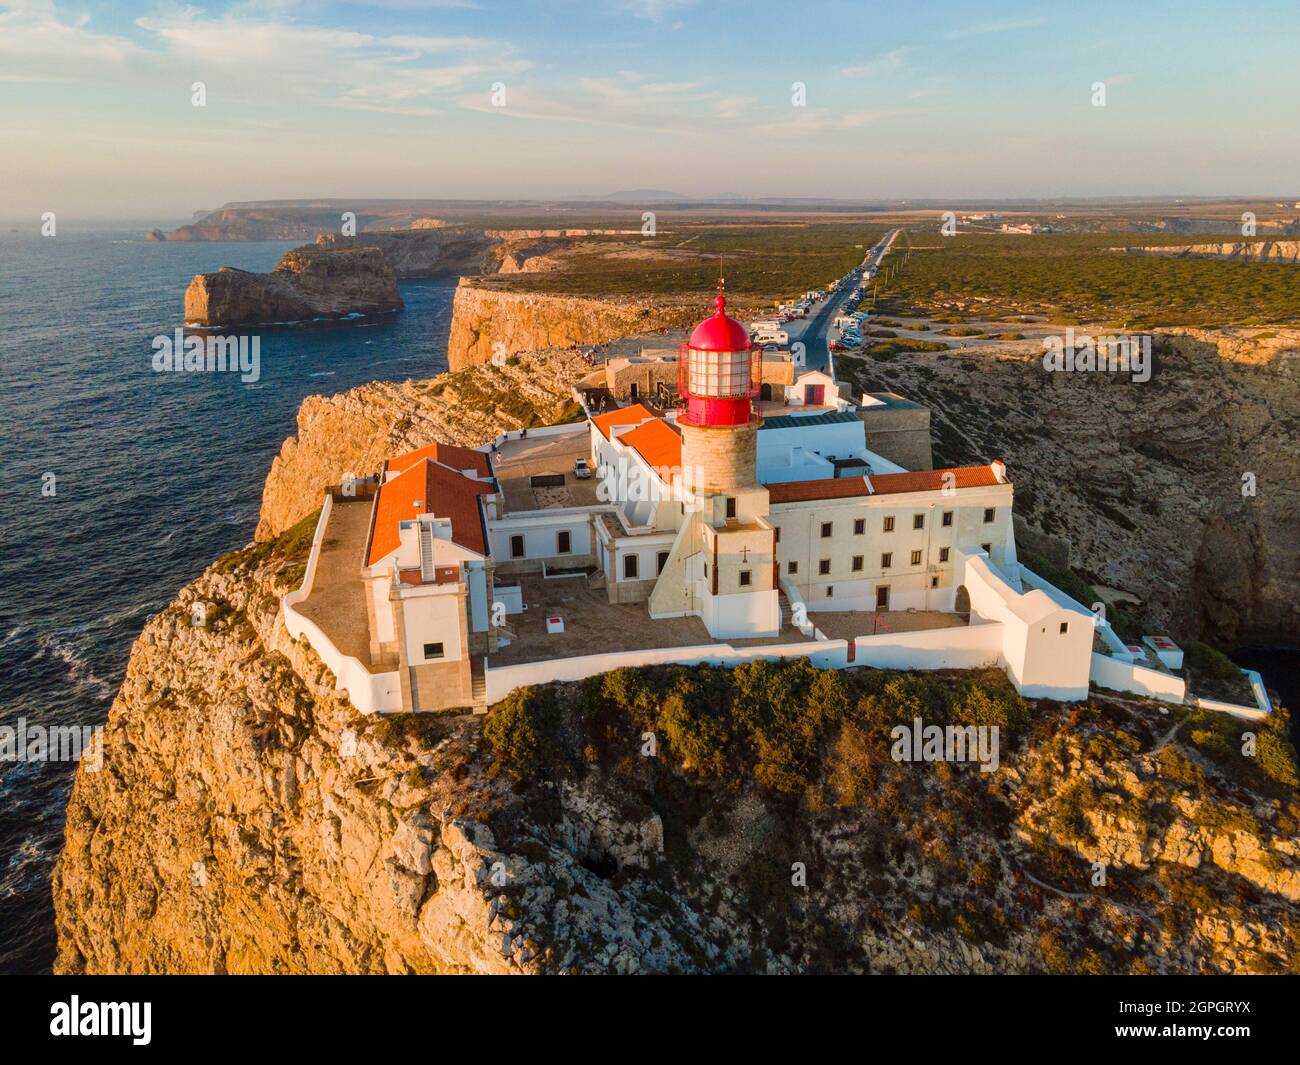 Portugal, Algarve, Sagres, le phare du Cap Saint Vincent, (Cabo de Sao Vicente) (vue aérienne) Banque D'Images